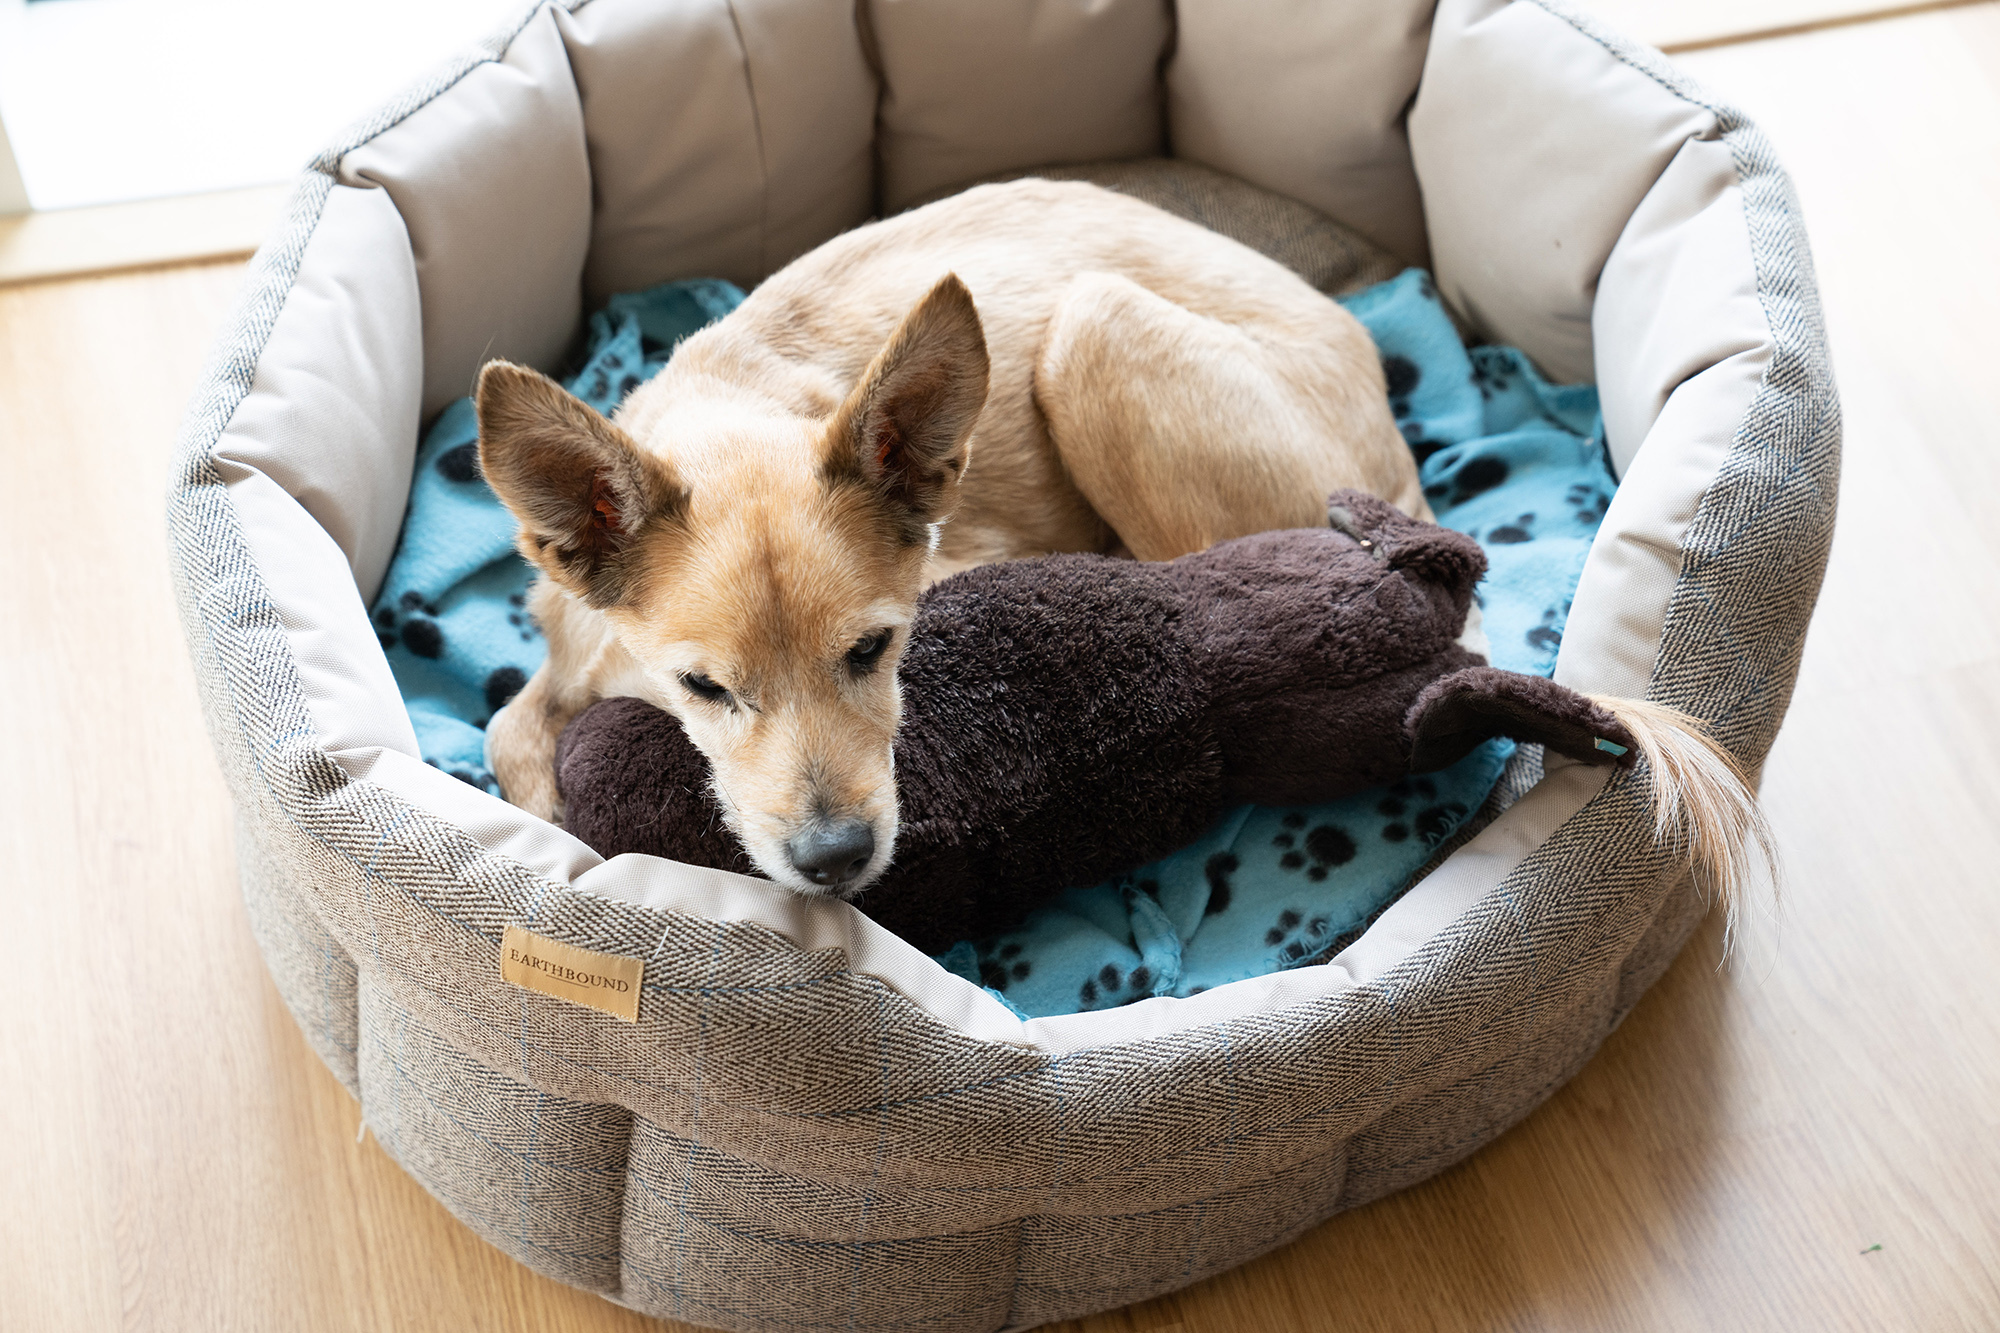 Saját ágya, játékai megnyutatják a stresszelő kutyát